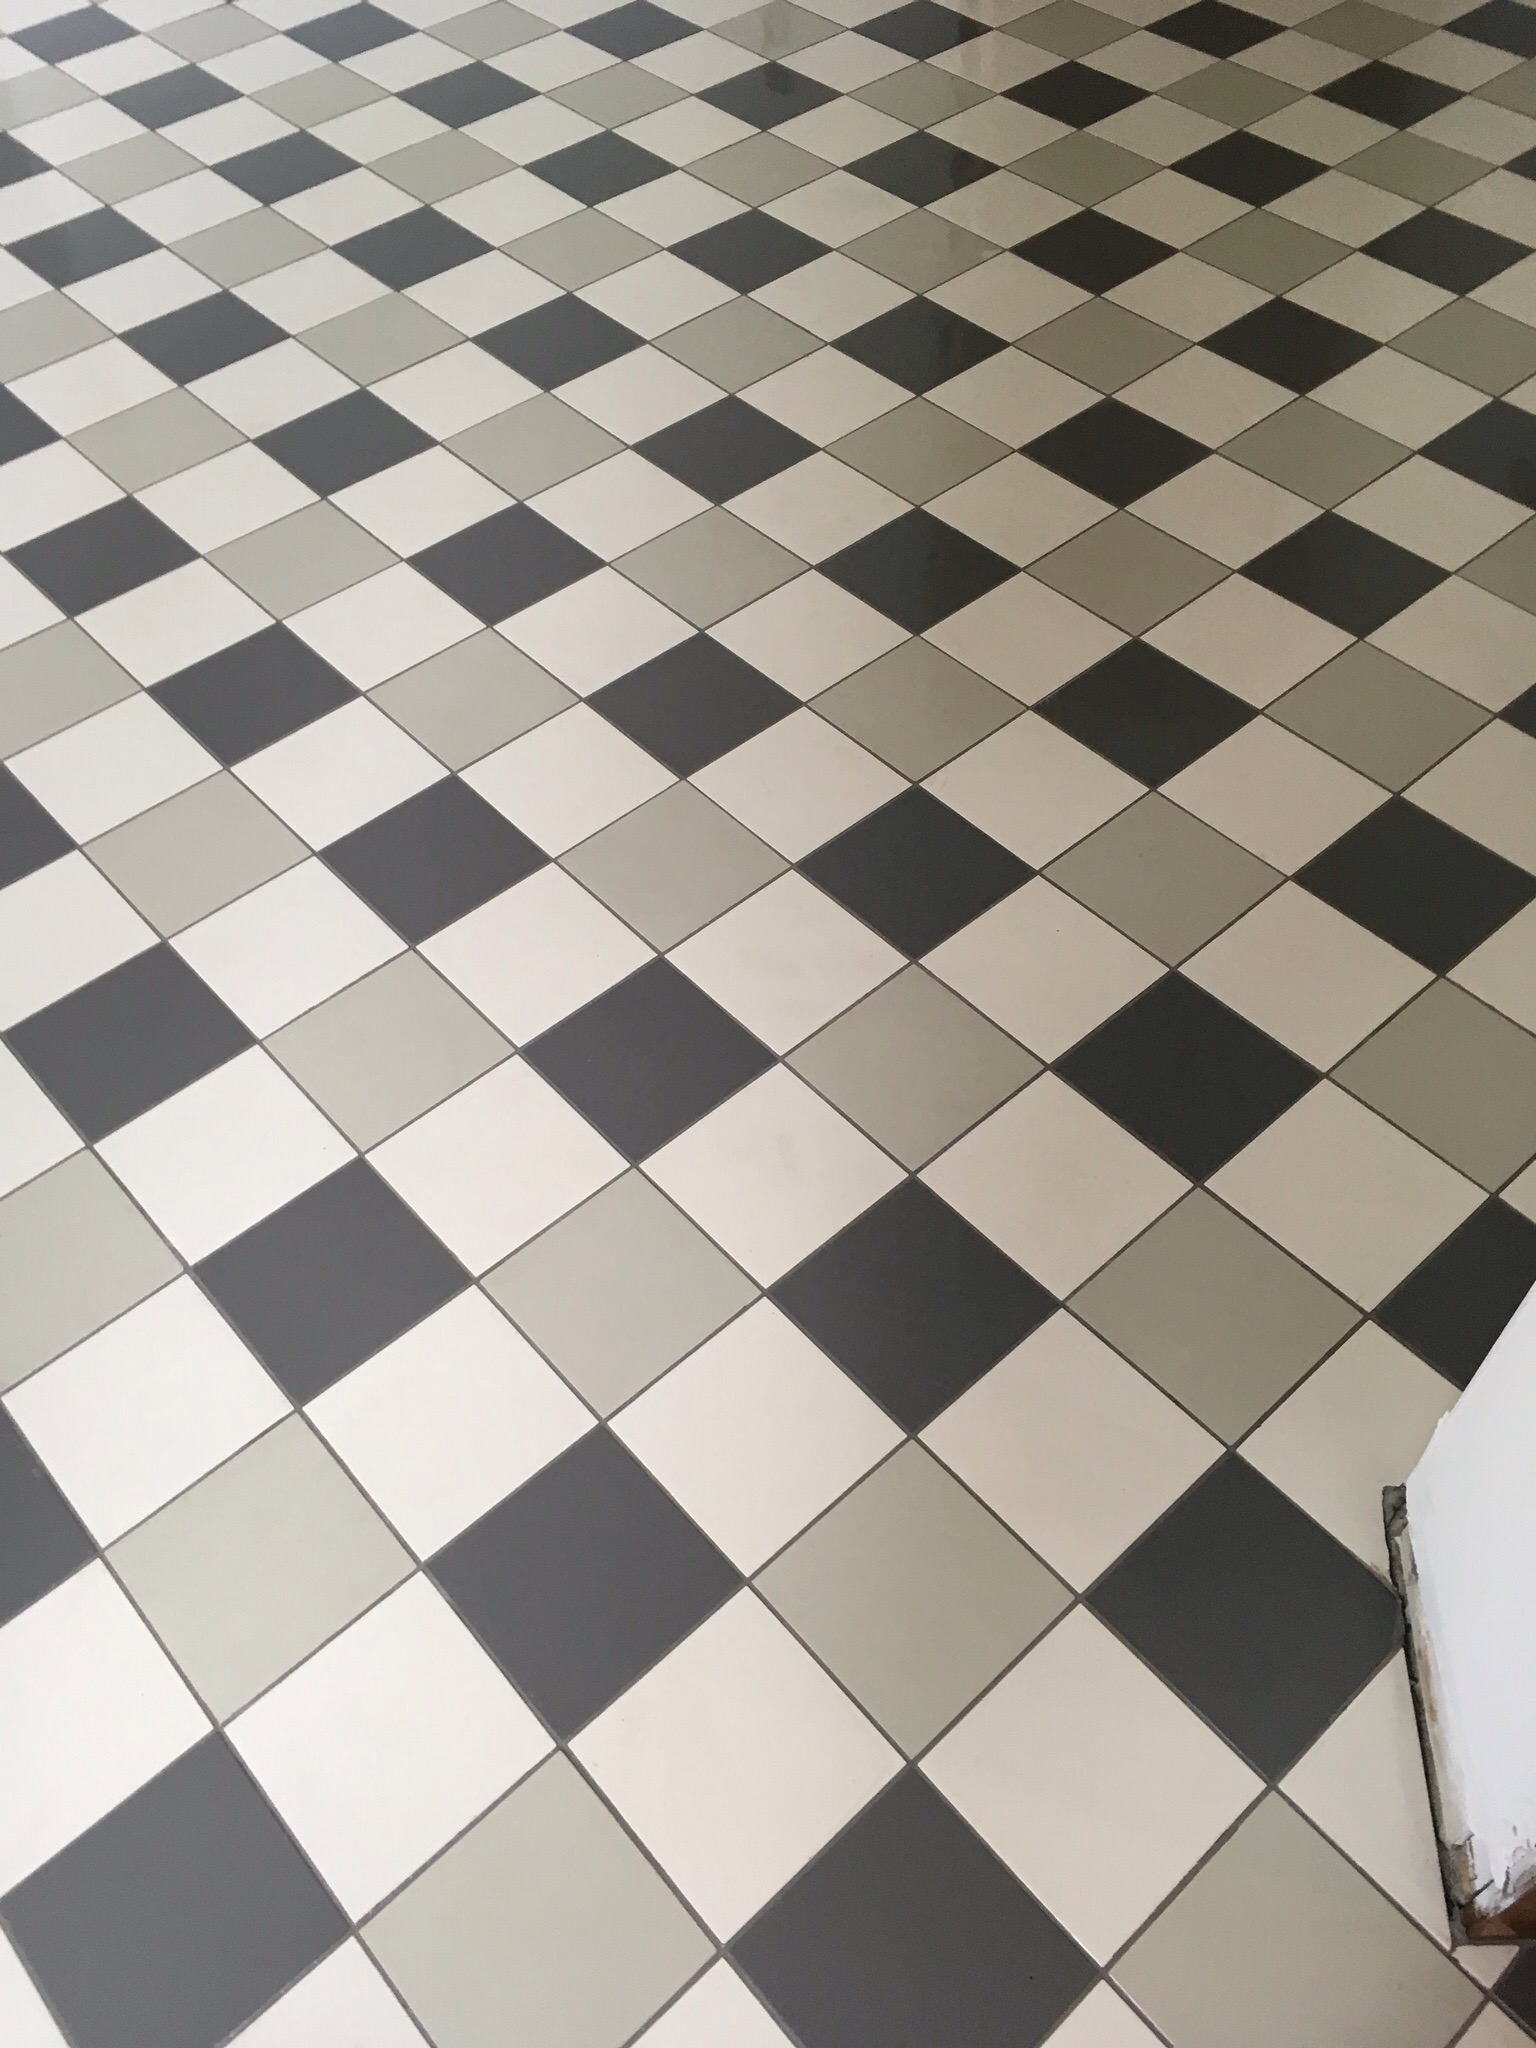 Victorian floor